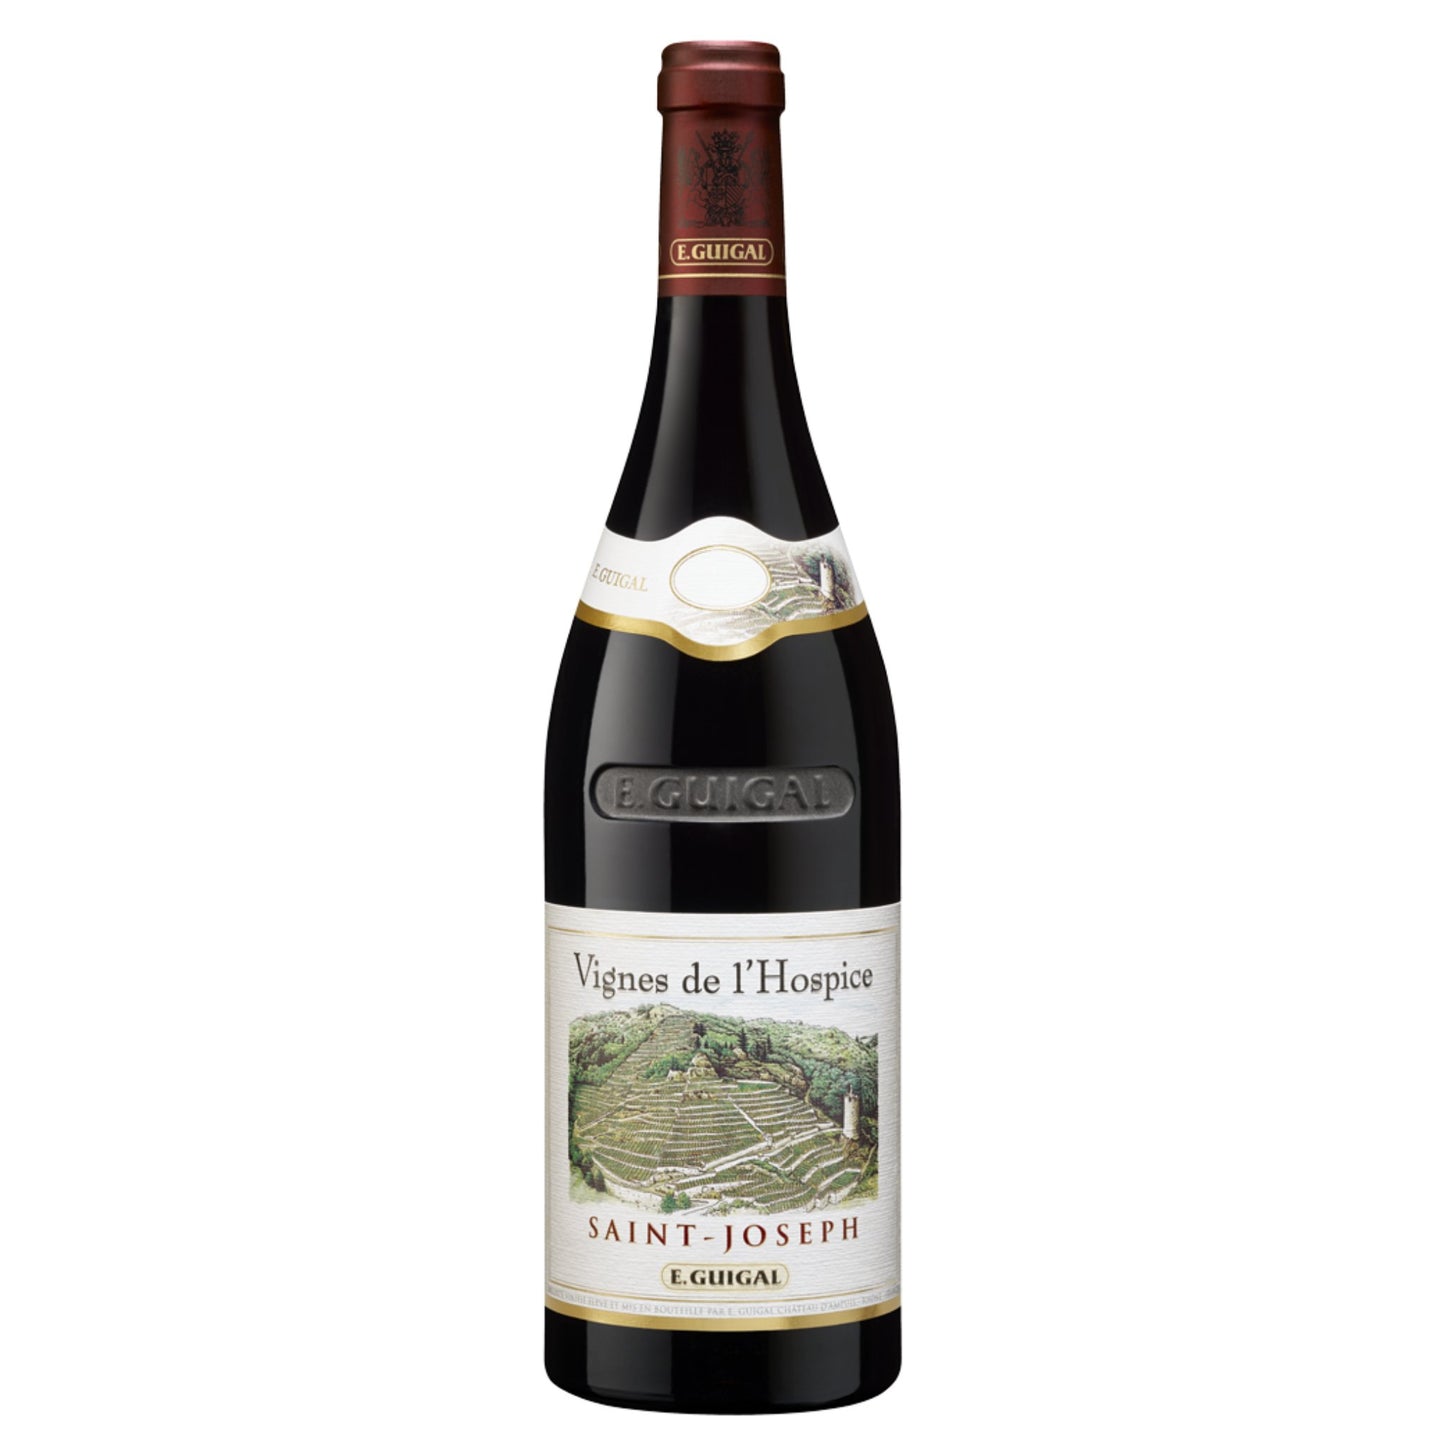 E. Guigal Saint Joseph Vignes de L’Hospice - Grand Vin Pte Ltd